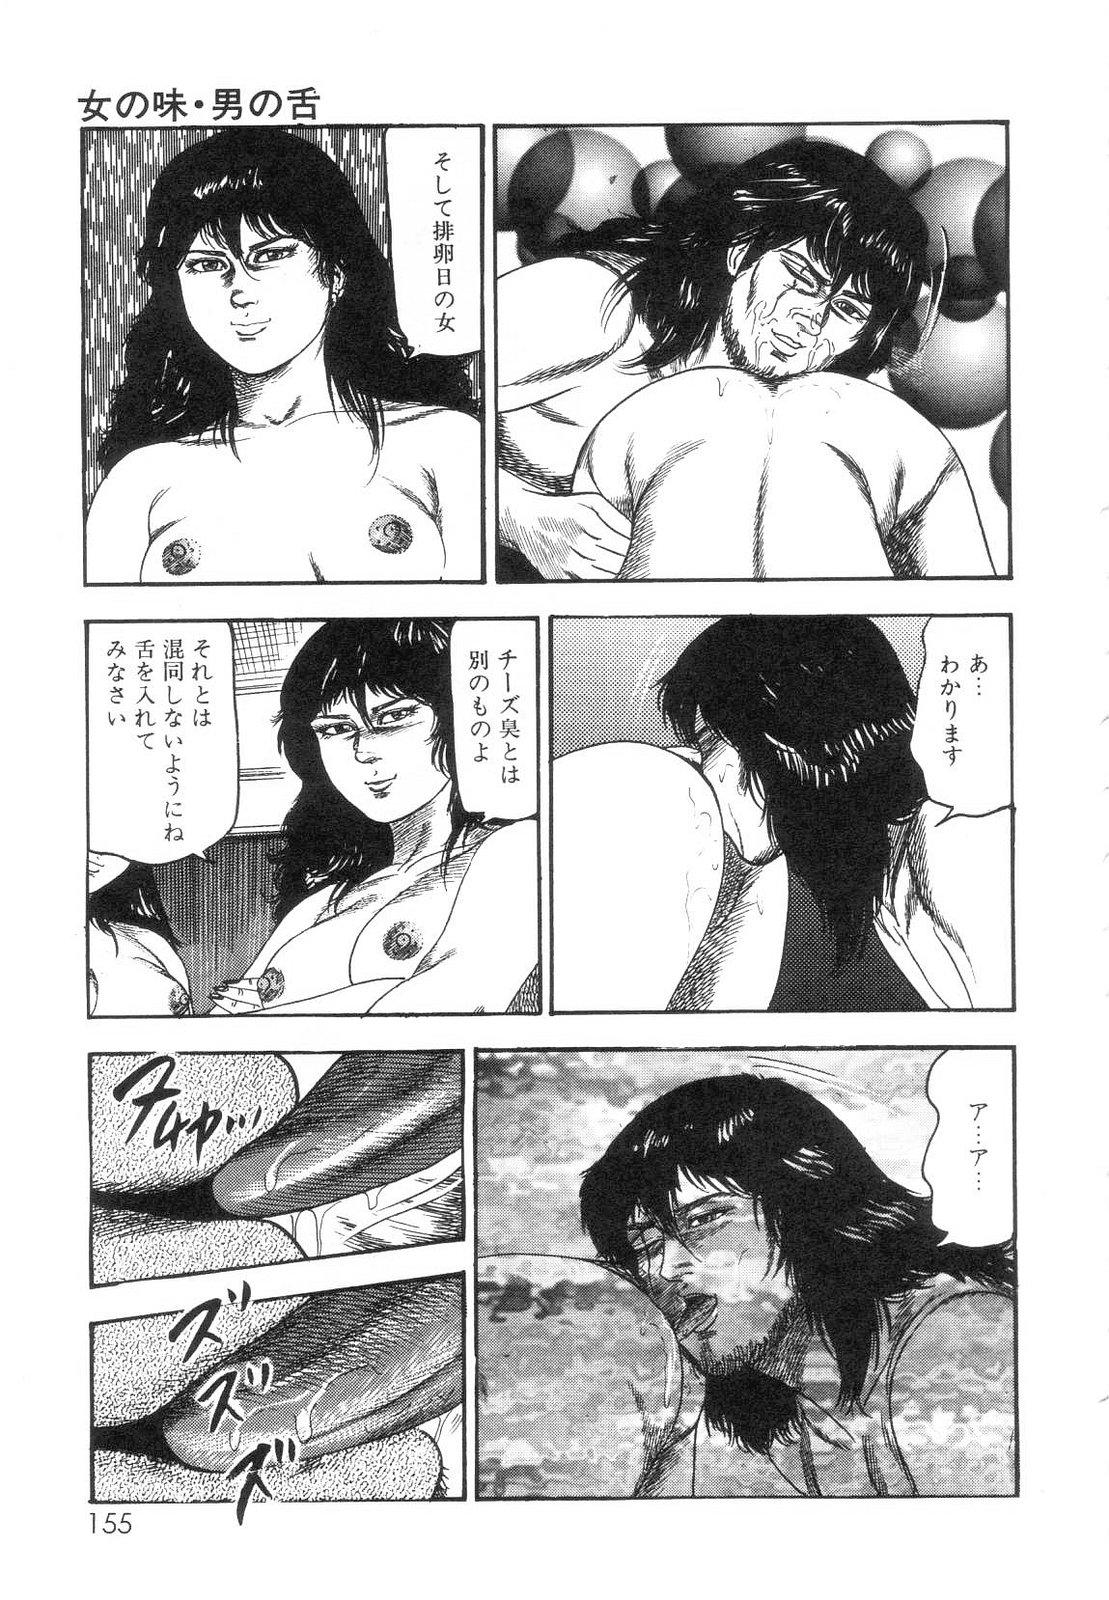 Shiro no Mokushiroku Vol. 7 - Shiiku Ningyou Erika no Shou 156